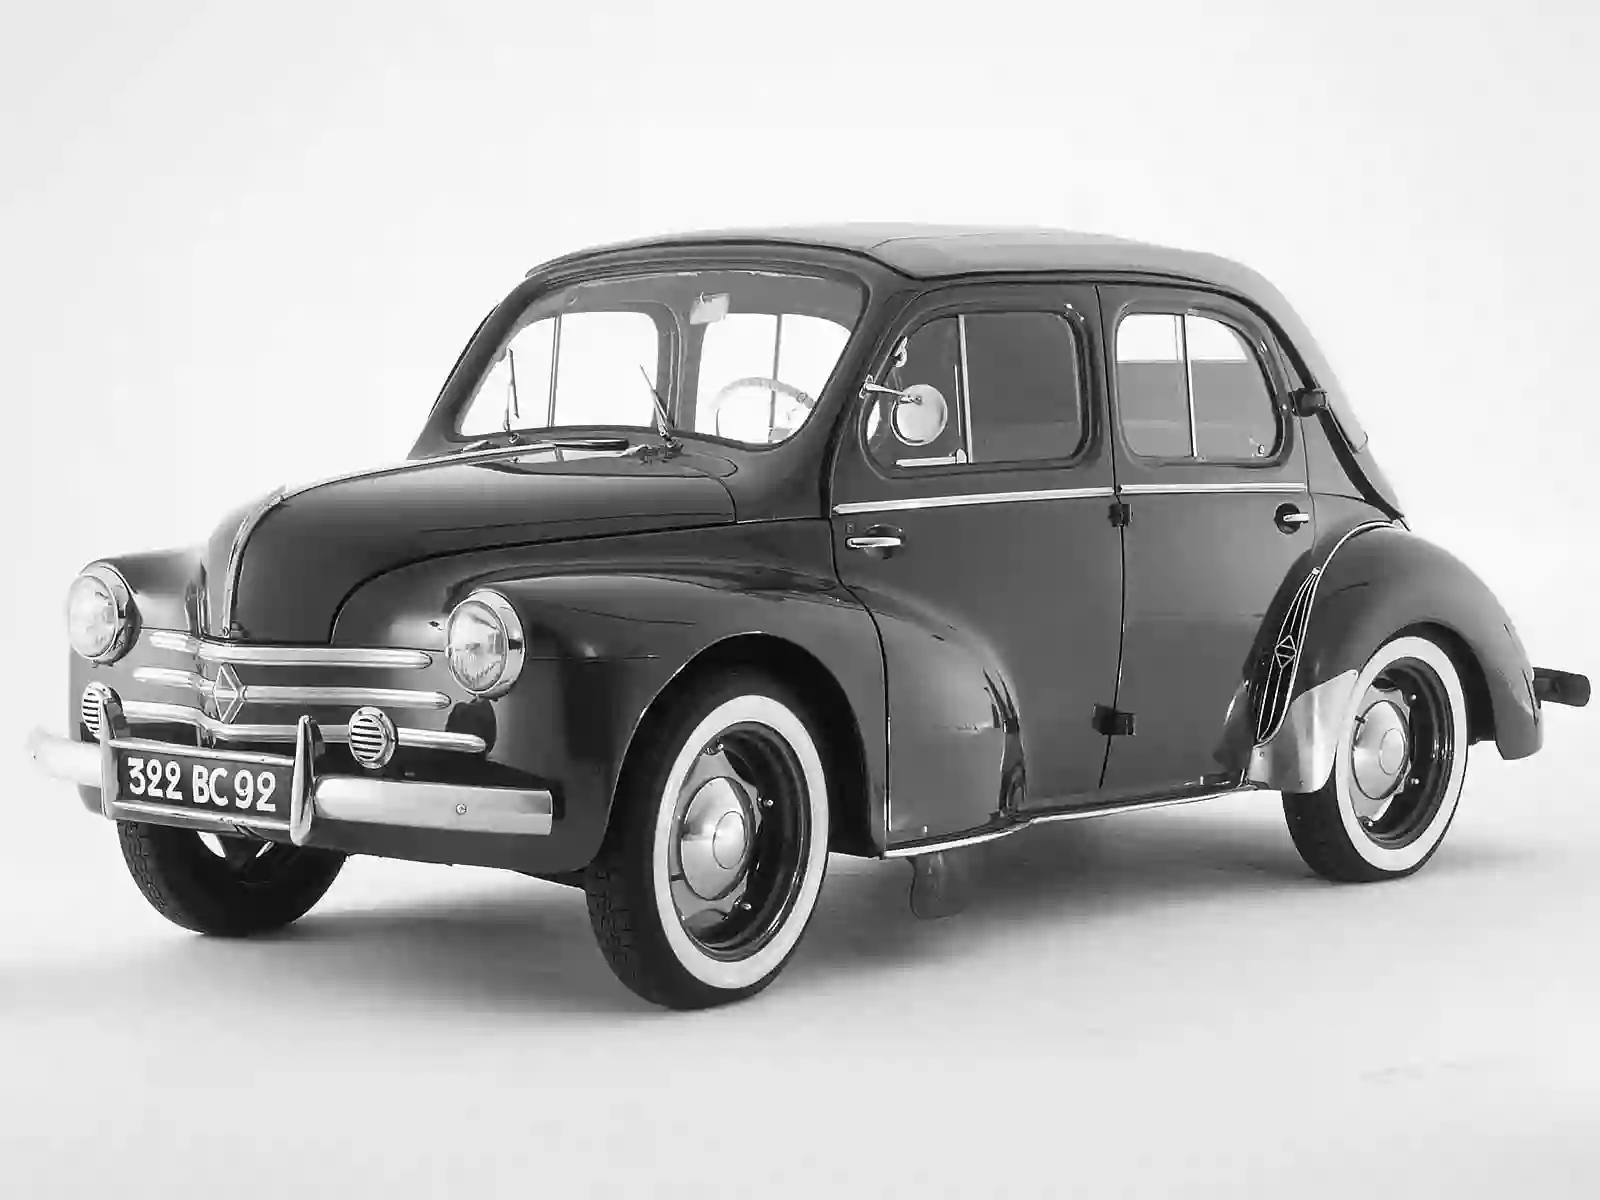 Renault Oldtimer